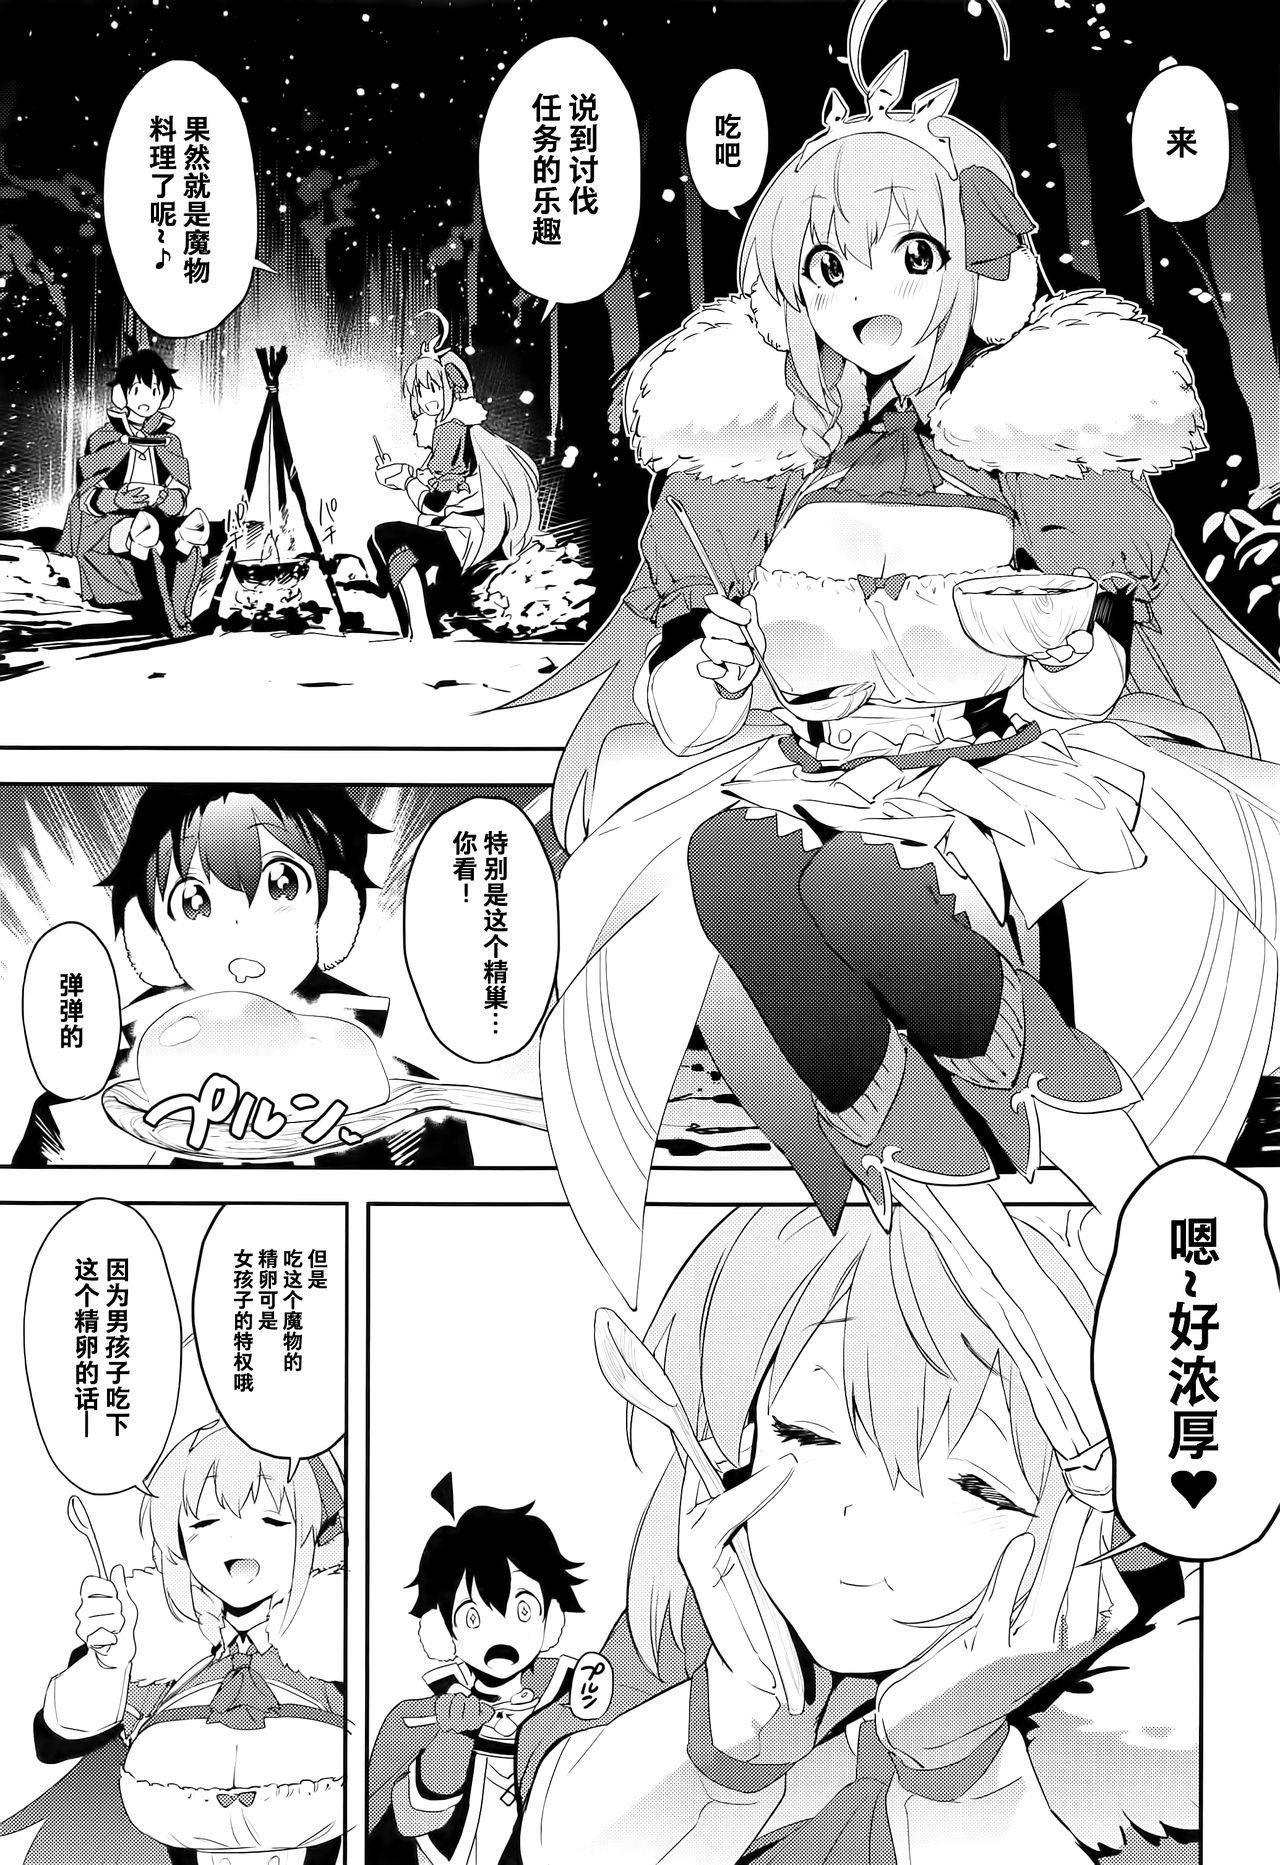 Bisexual Pecorine to Shota Kishi-kun - Princess connect 19yo - Page 2